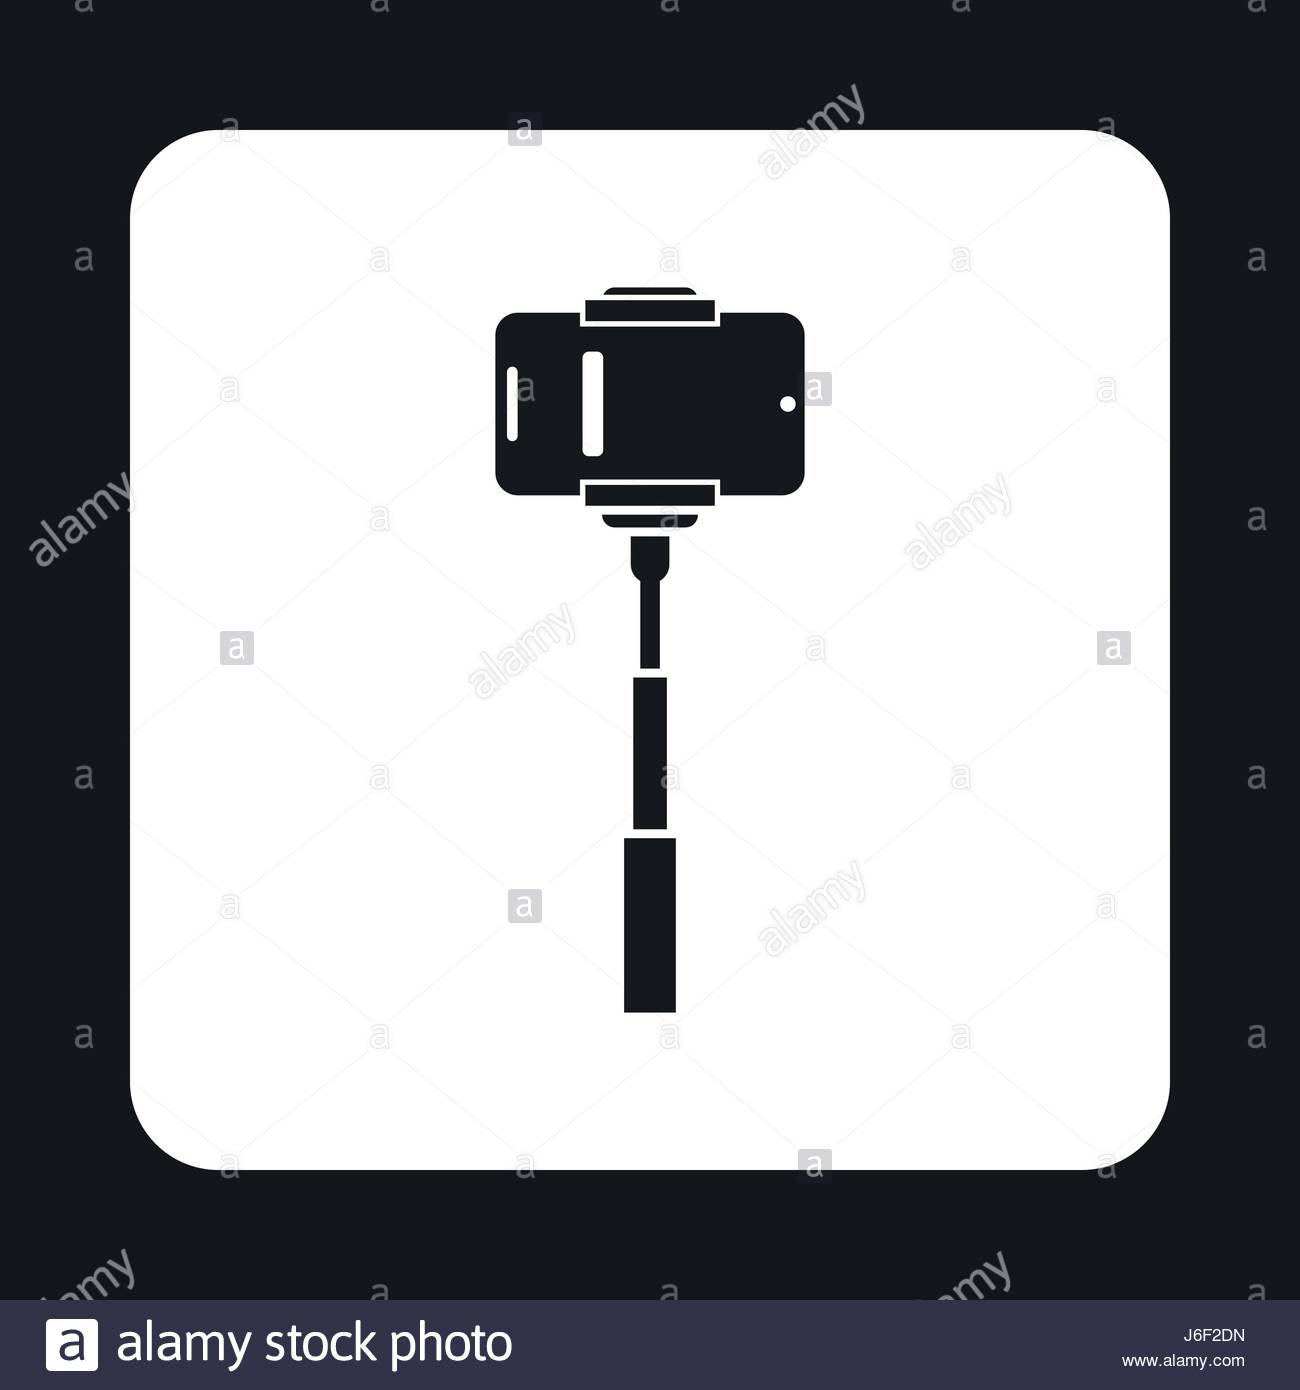 Selfie-stick icons | Noun Project